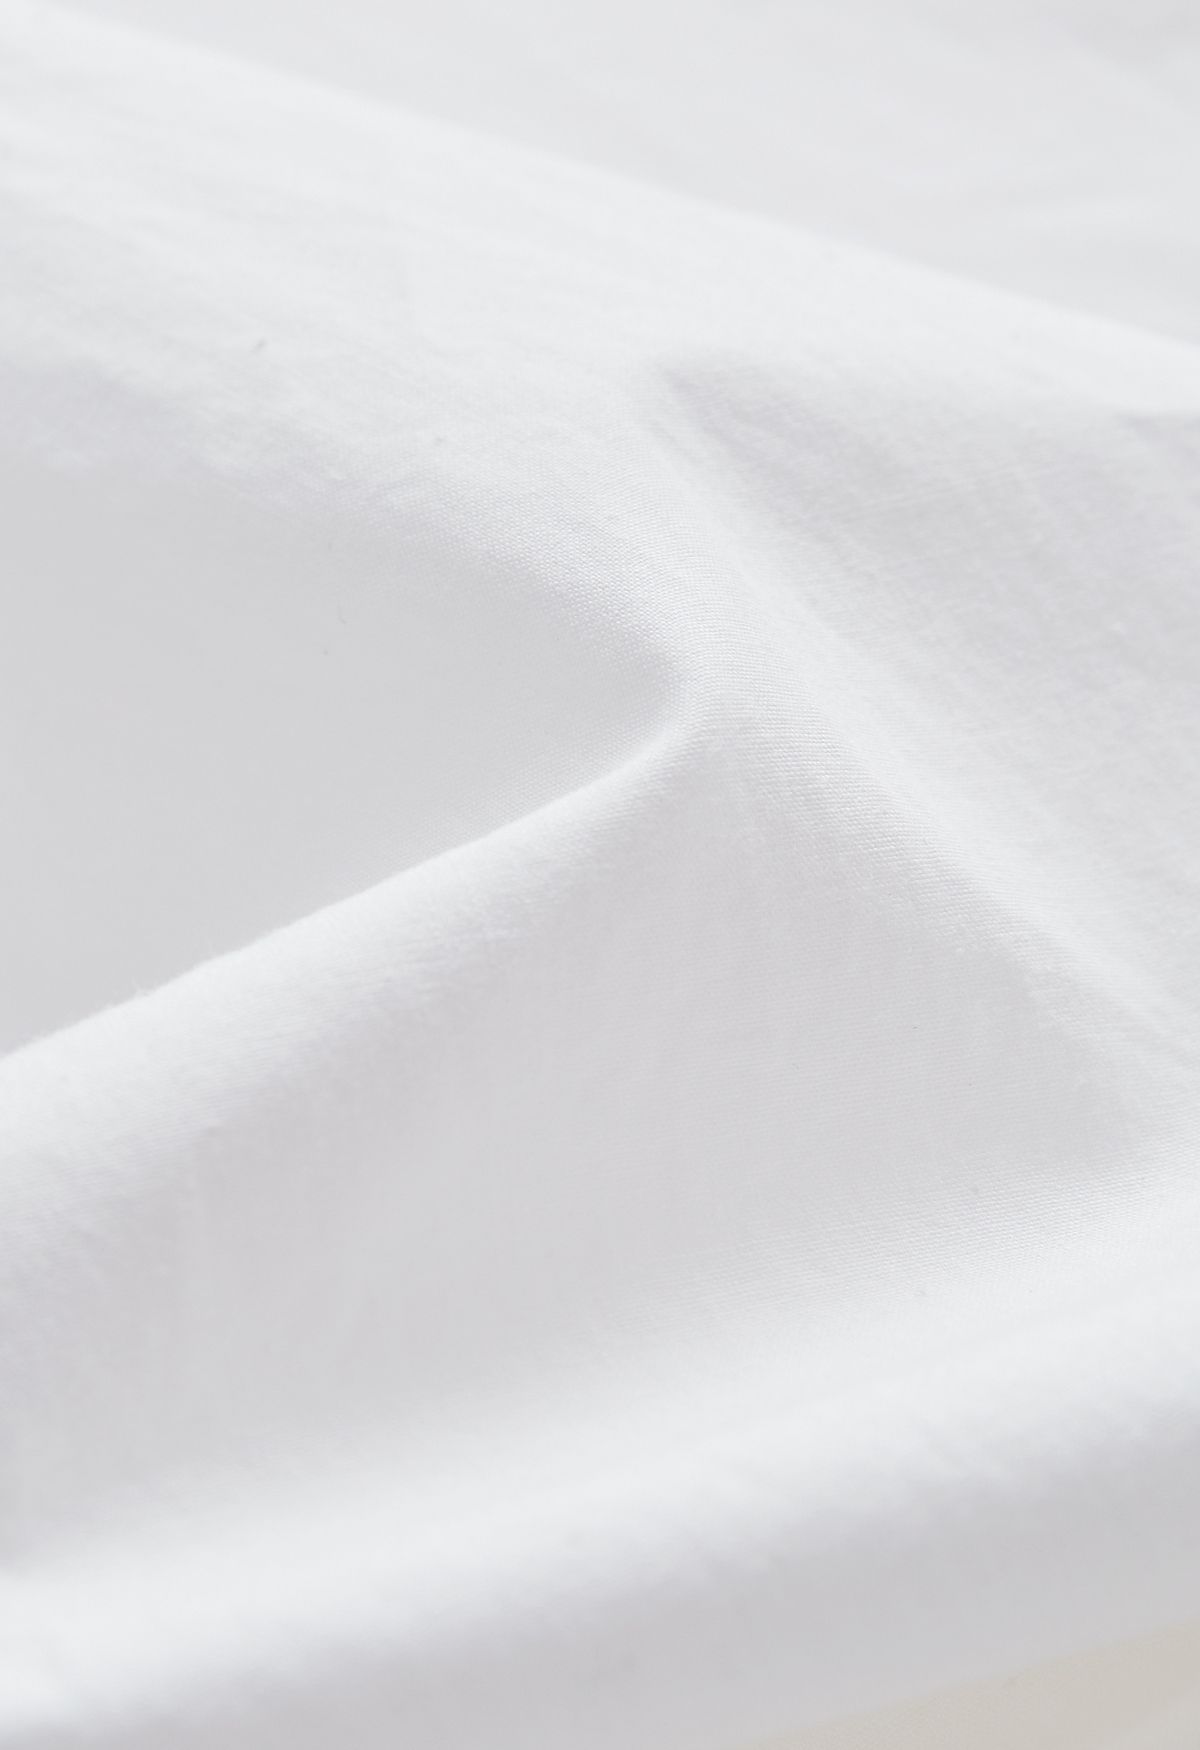 Chemise boutonnée en coton à manches avec cordon de serrage en blanc